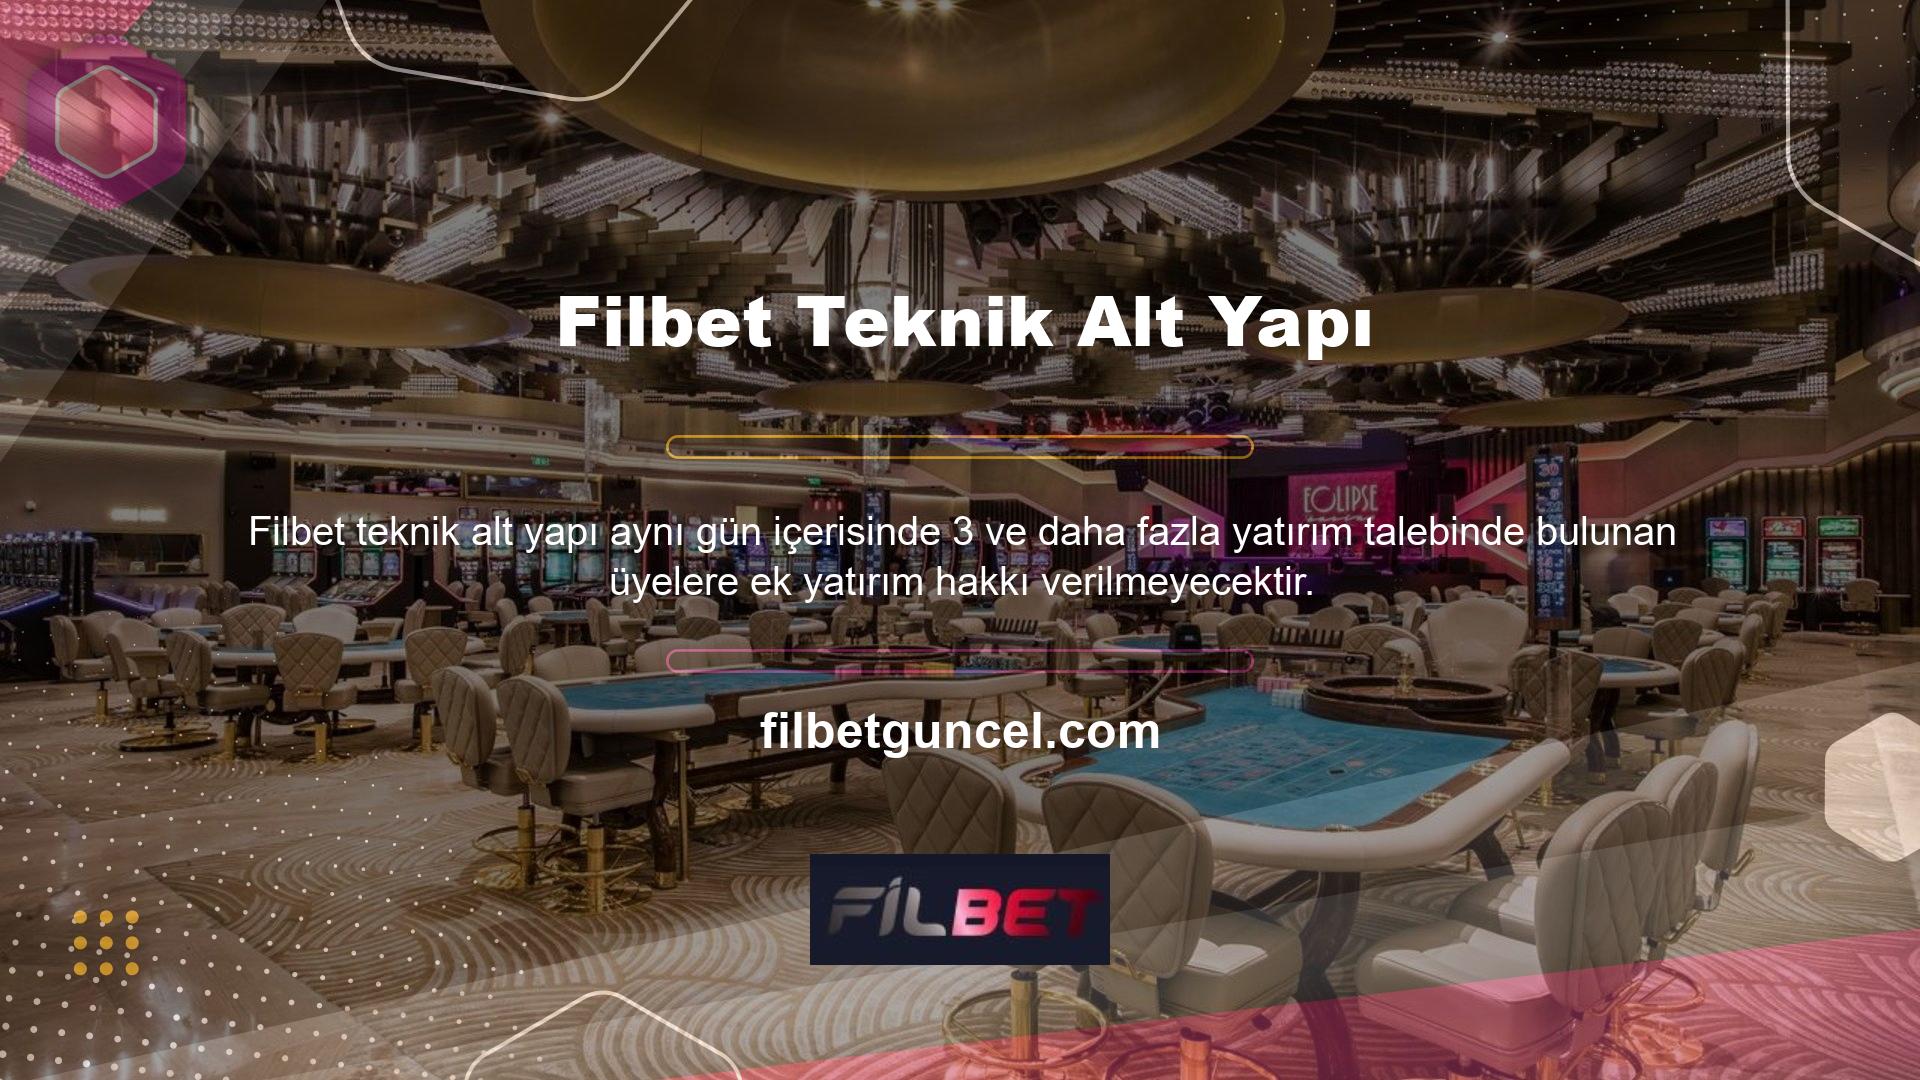 İlk üye olan bahis sitesi Filbet, dünyaca ünlü bir site haline gelmiş ve bahis pazarında önemli bir konuma sahiptir